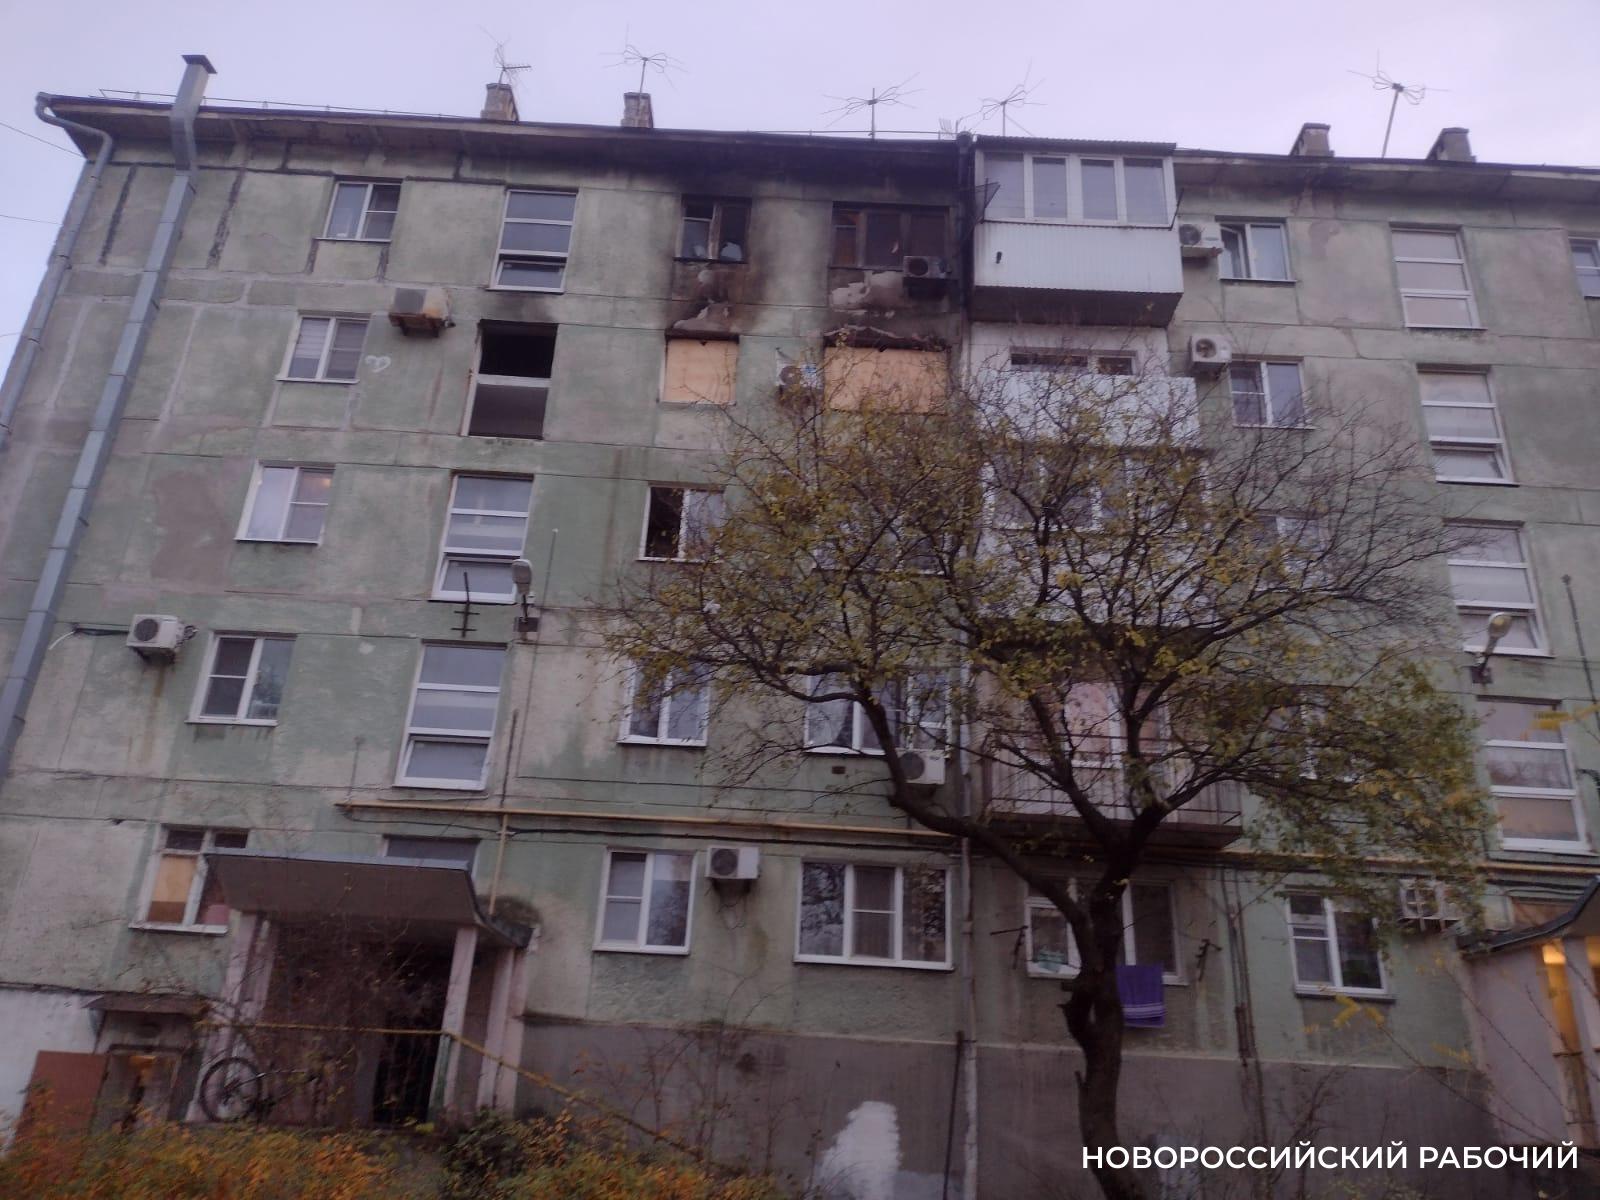 Объятый пламенем мужчина метался по квартире! Жильцы дома в Новороссийске  вспоминают ужасающие подробности происшествия